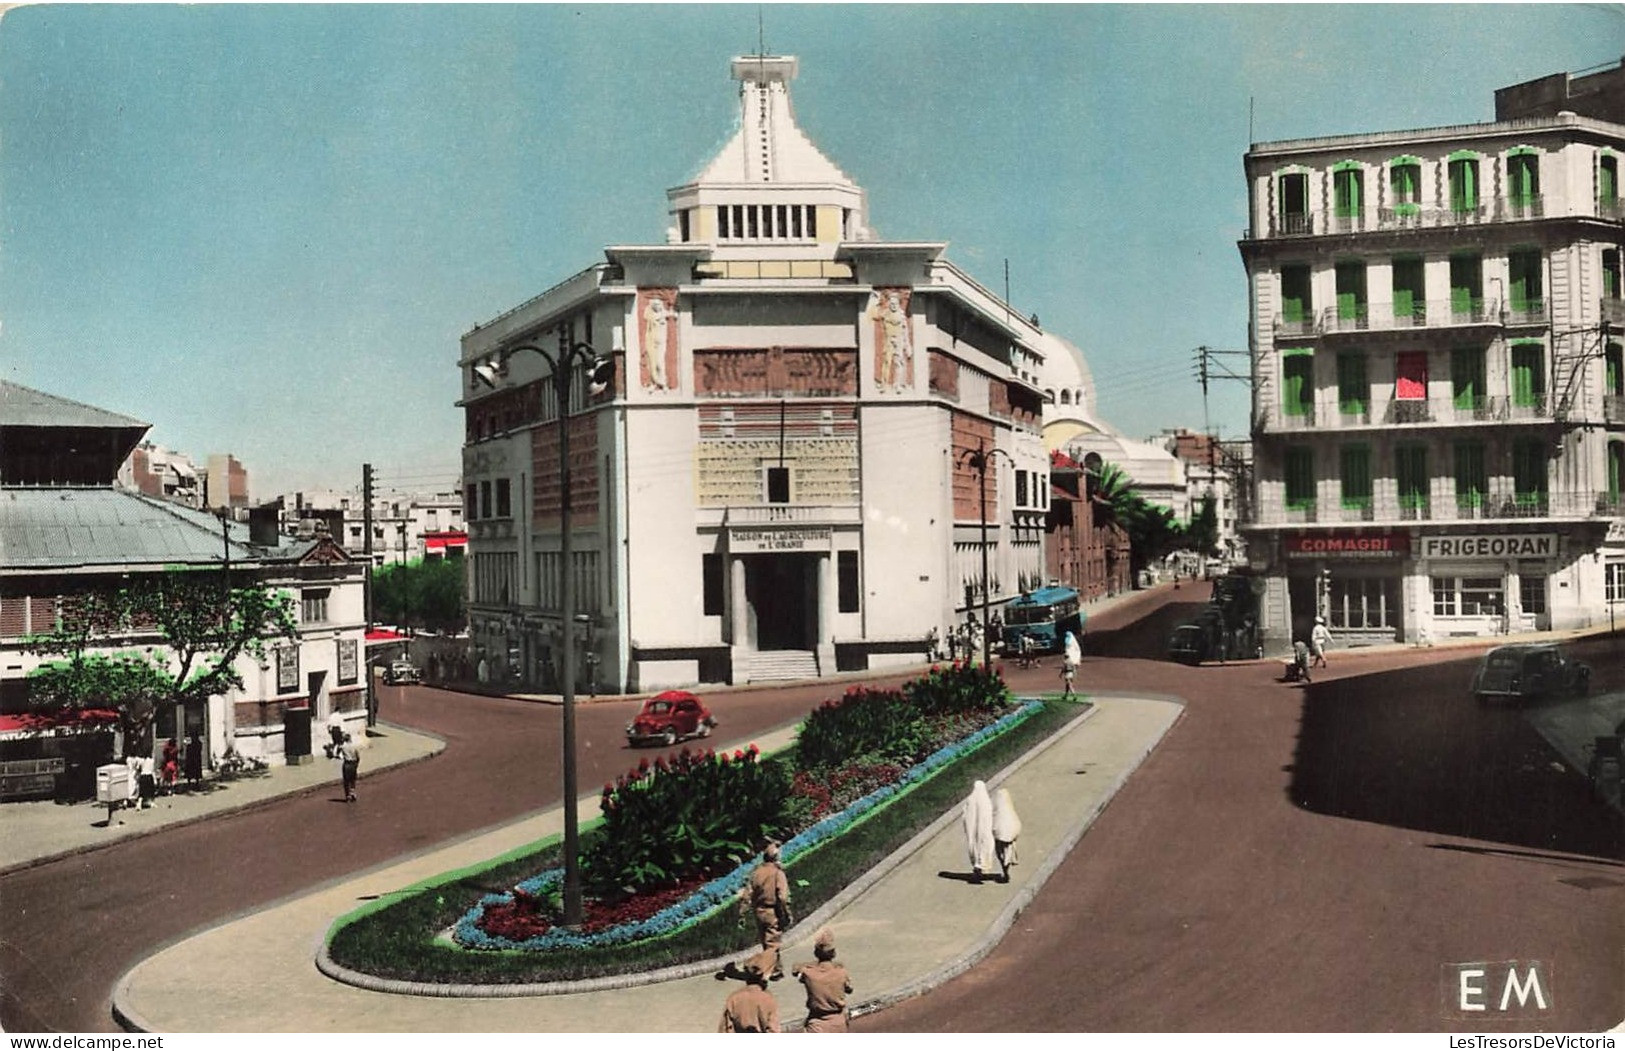 ALGERIE - Oran - La Maison De L'agriculture Et La Place Kargentah - Colorisé - Carte Postale Ancienne - Oran